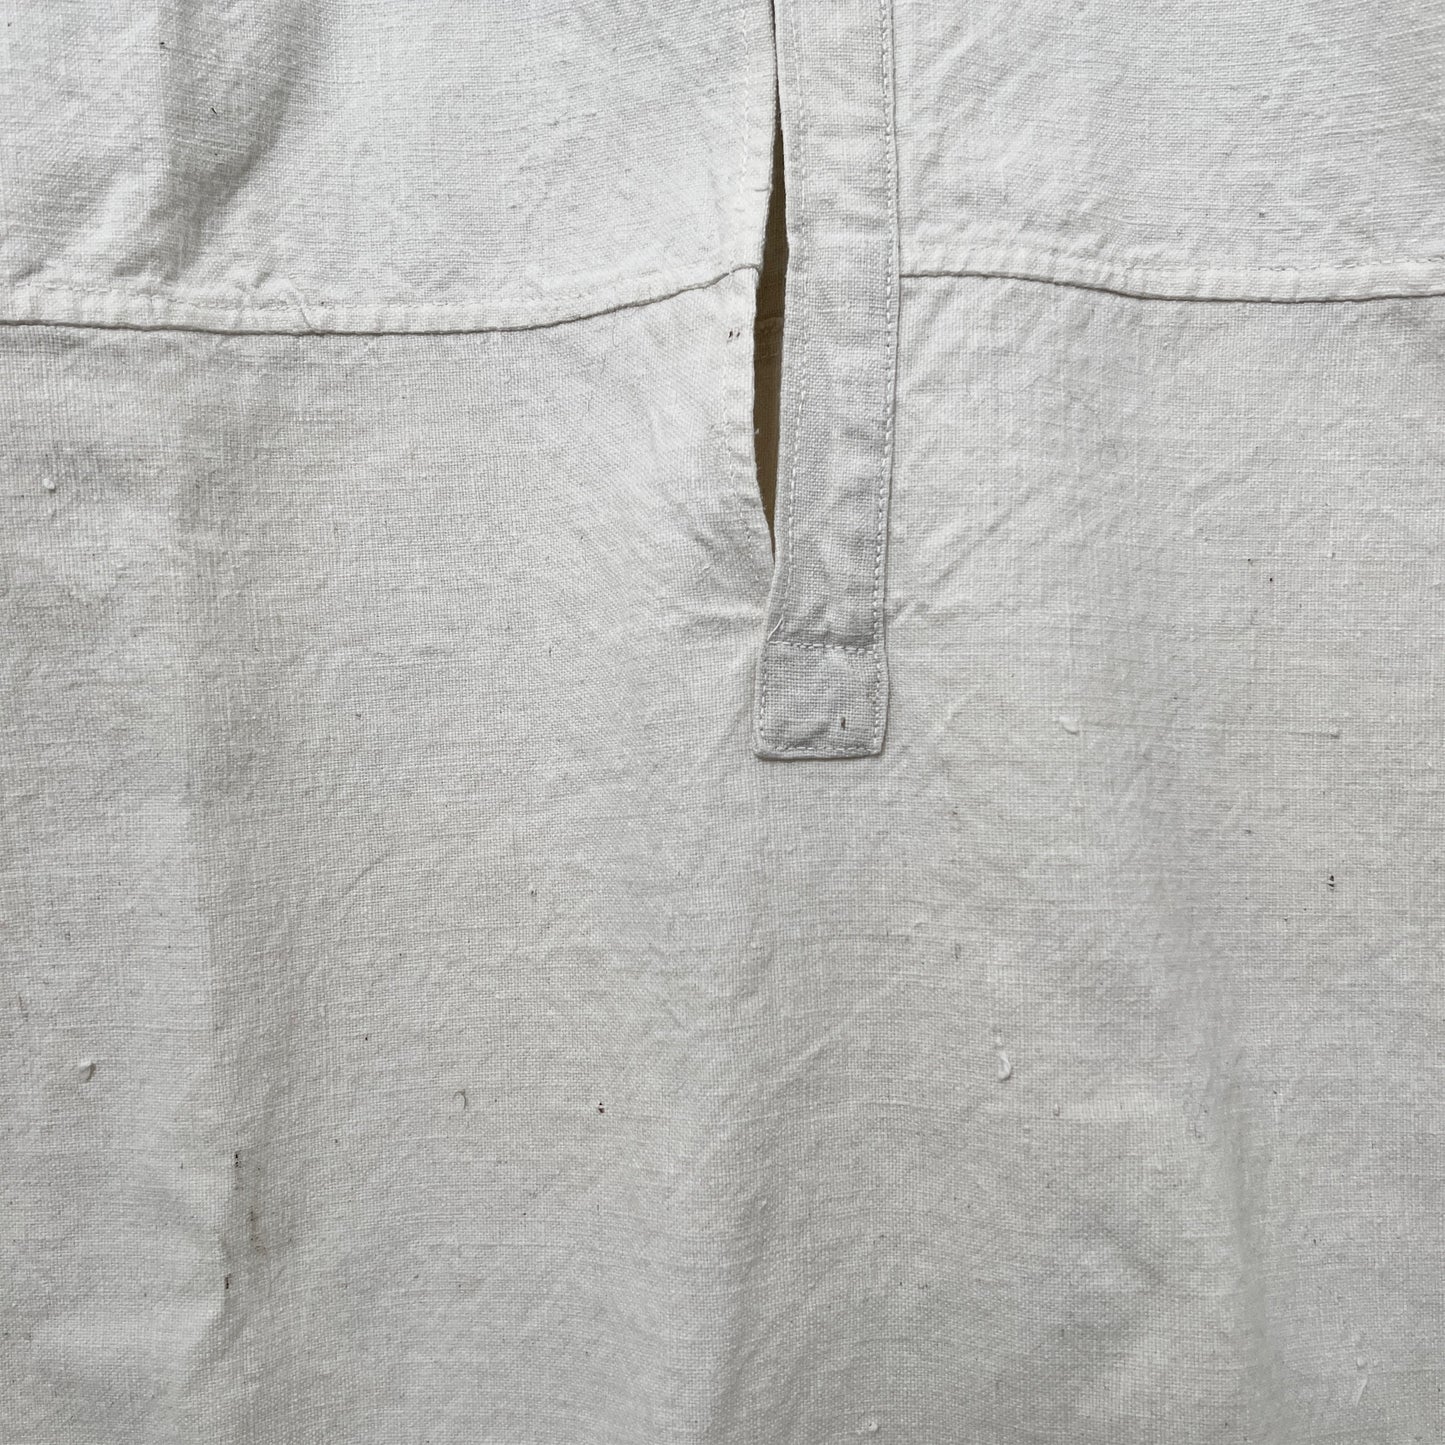 【FEEL】 Antique linen shirt